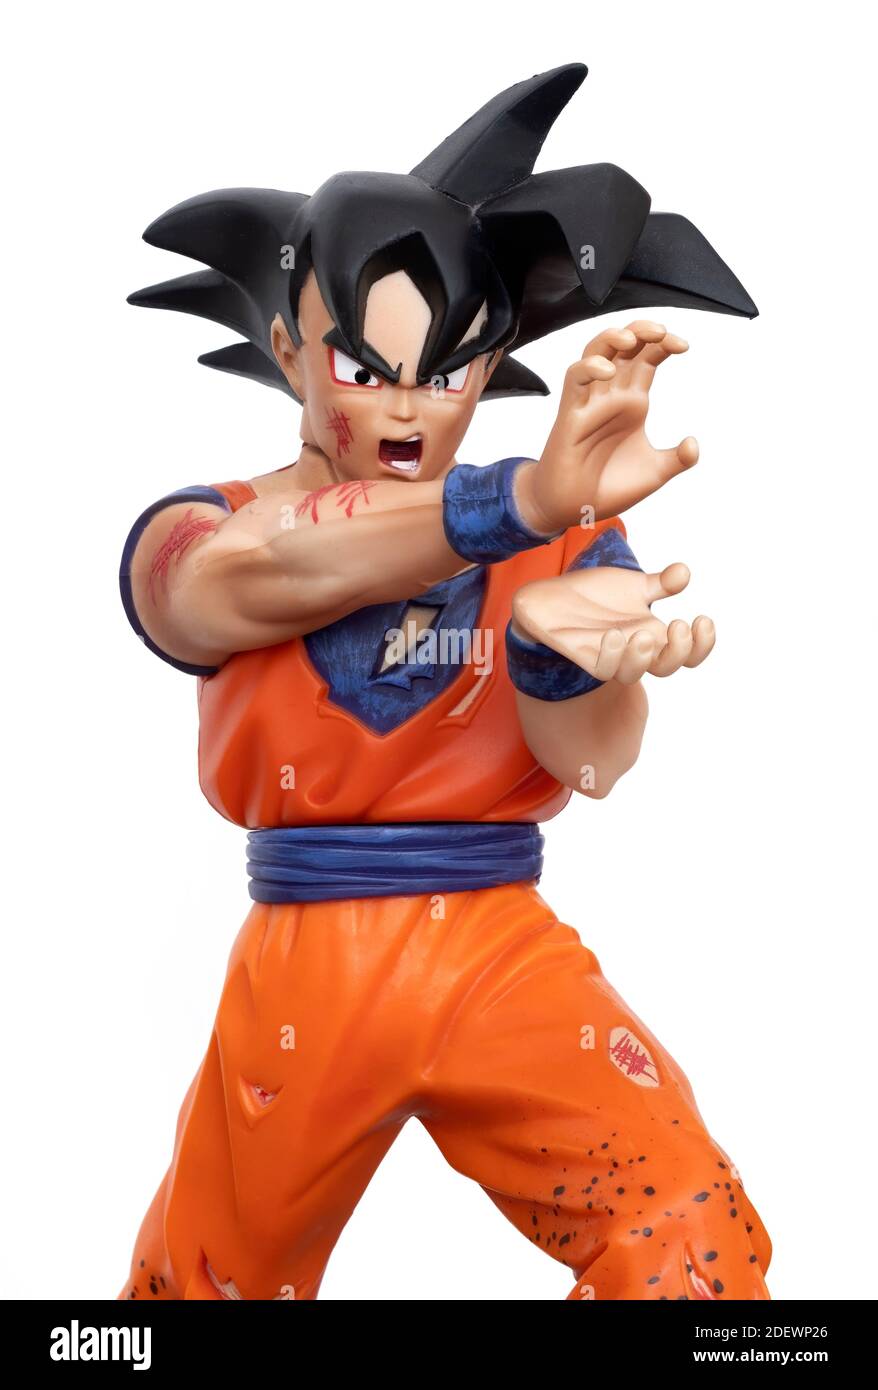 Sammelfigur von Son Goku, einer fiktiven Figur und Hauptfigur der Dragon Ball Manga-Serie von Akira Toriyama. Stockfoto